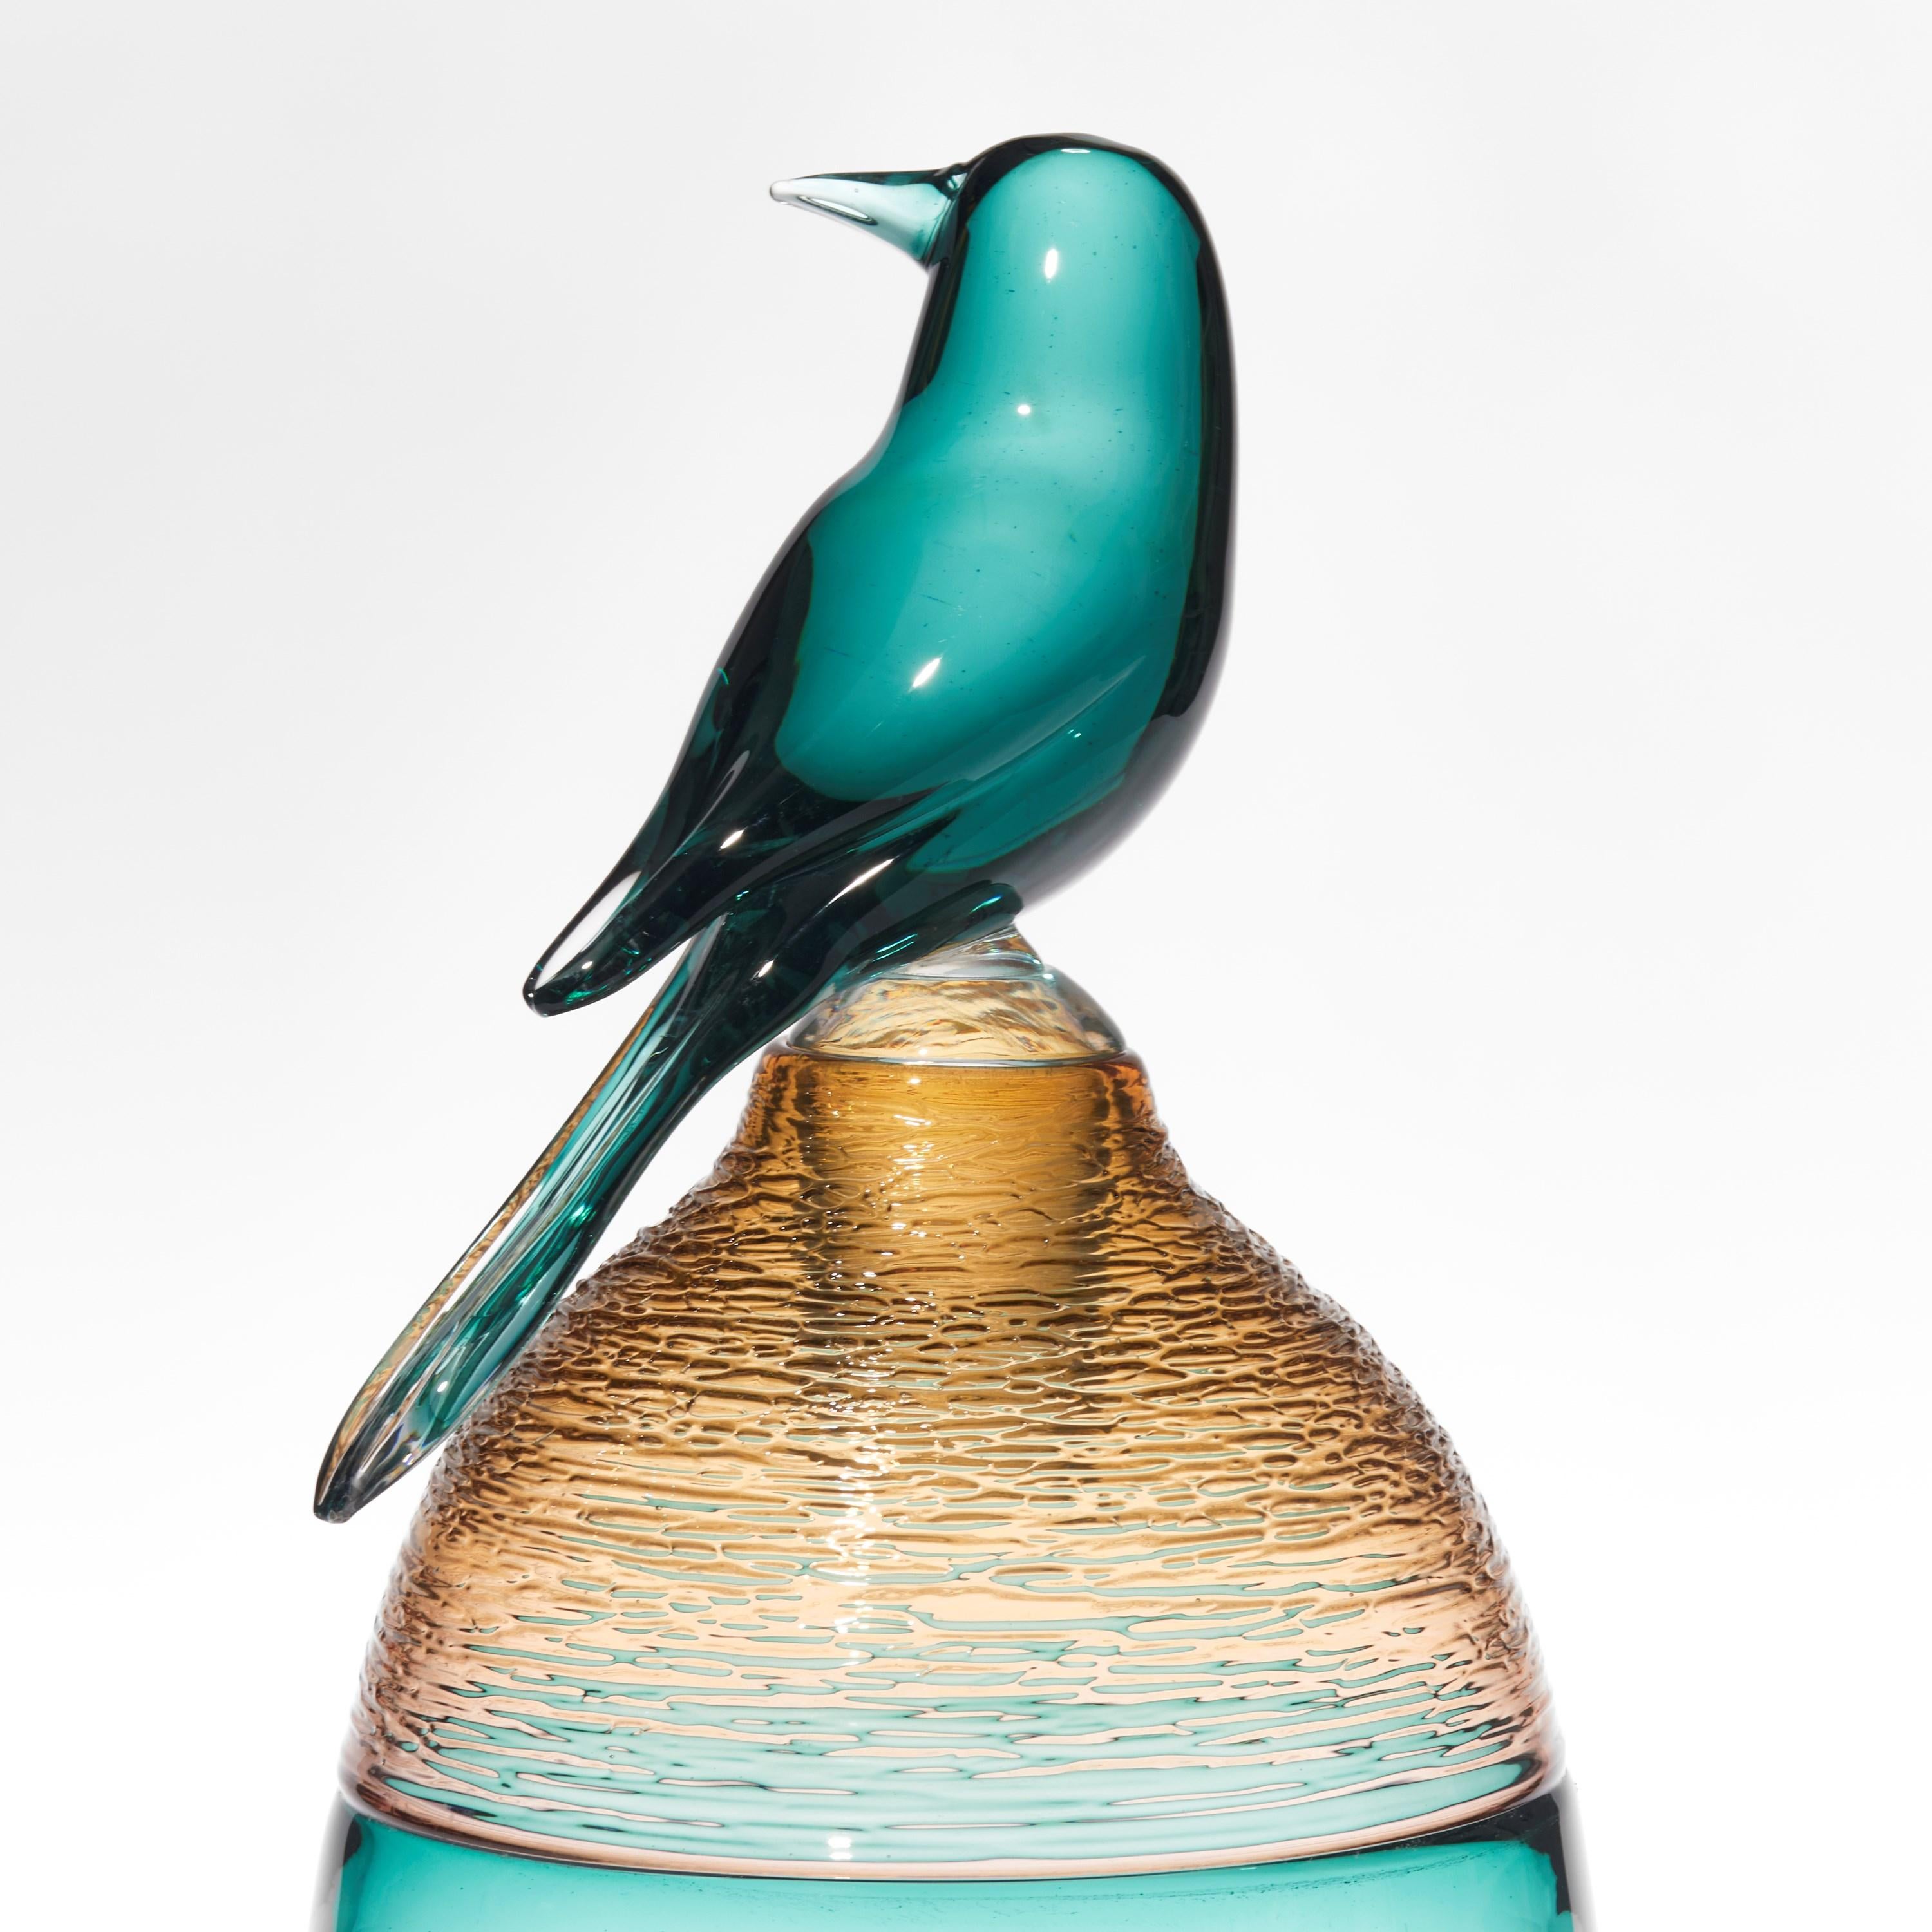 Organic Modern All About Birds XVIII, jade/green & amber glass bird sculpture by Julie Johnson